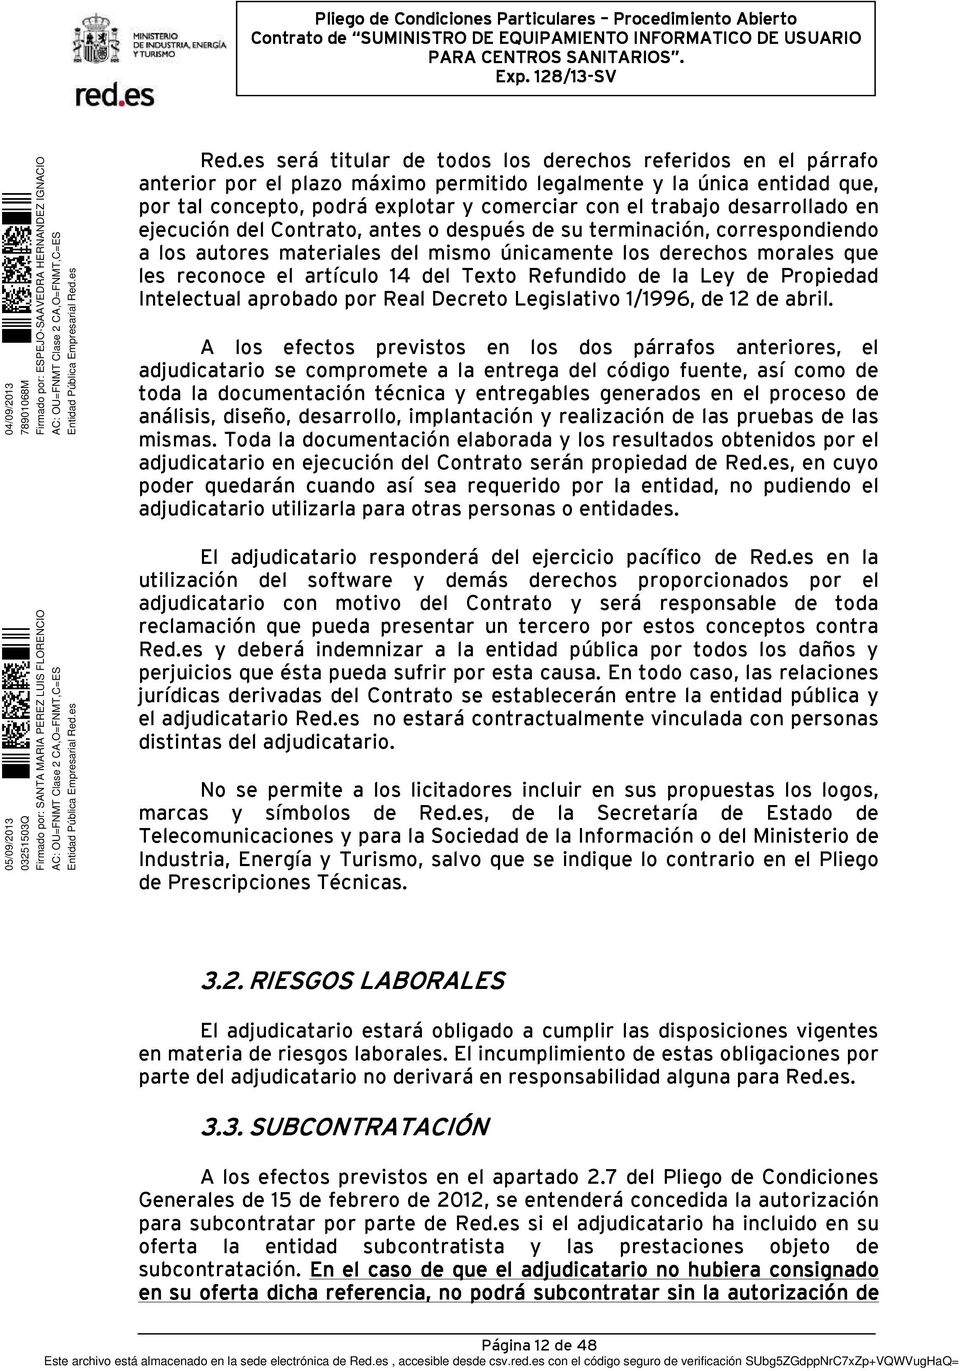 Refundido de la Ley de Propiedad Intelectual aprobado por Real Decreto Legislativo 1/1996, de 12 de abril.